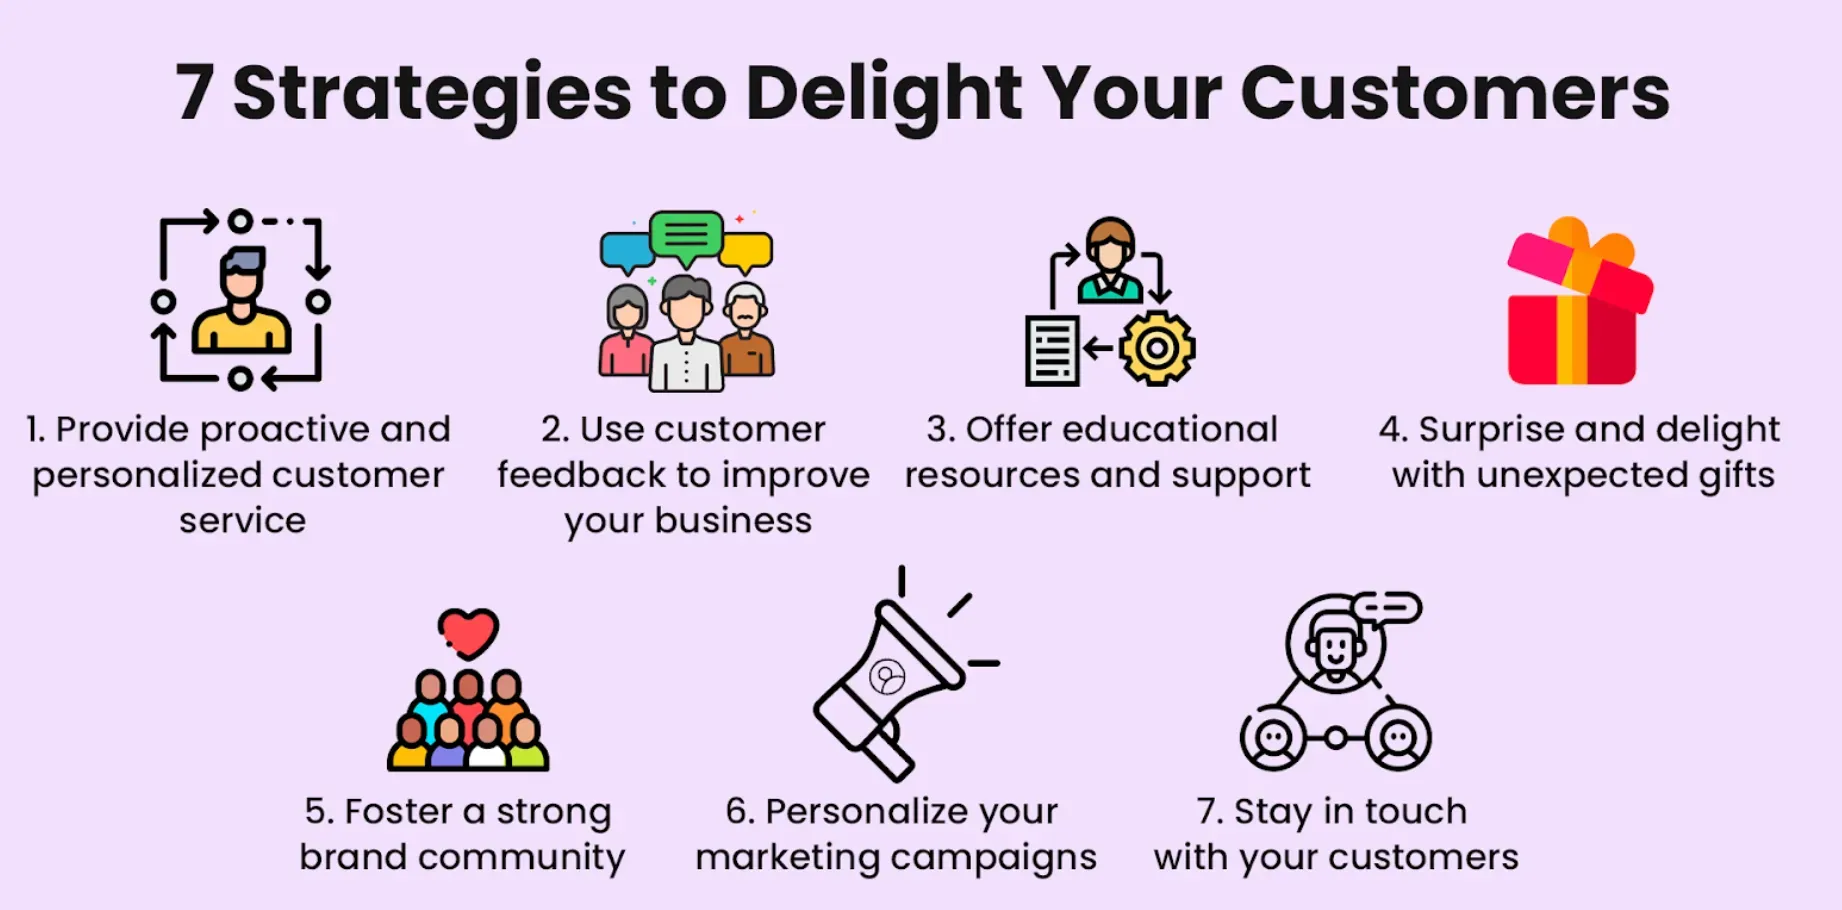 Customer Delight Best Practices